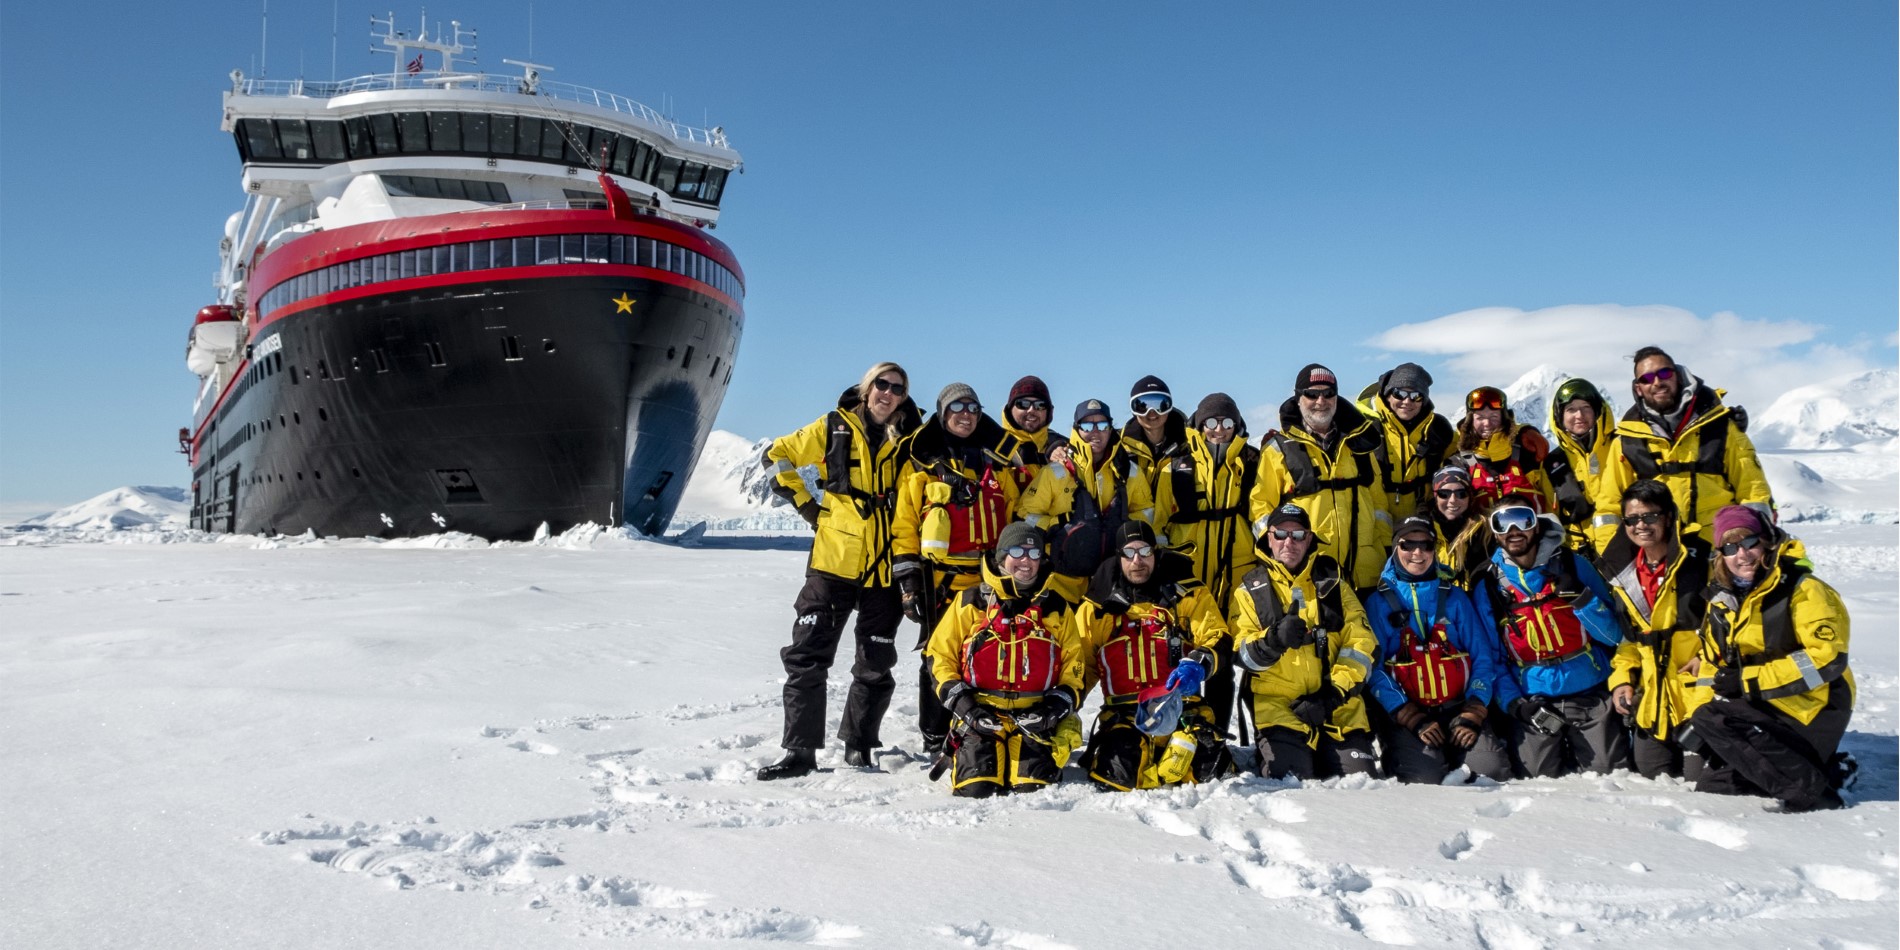 Anlandung in der Antarktis mit dem Expeditionsteam der MS Roald Amundsen